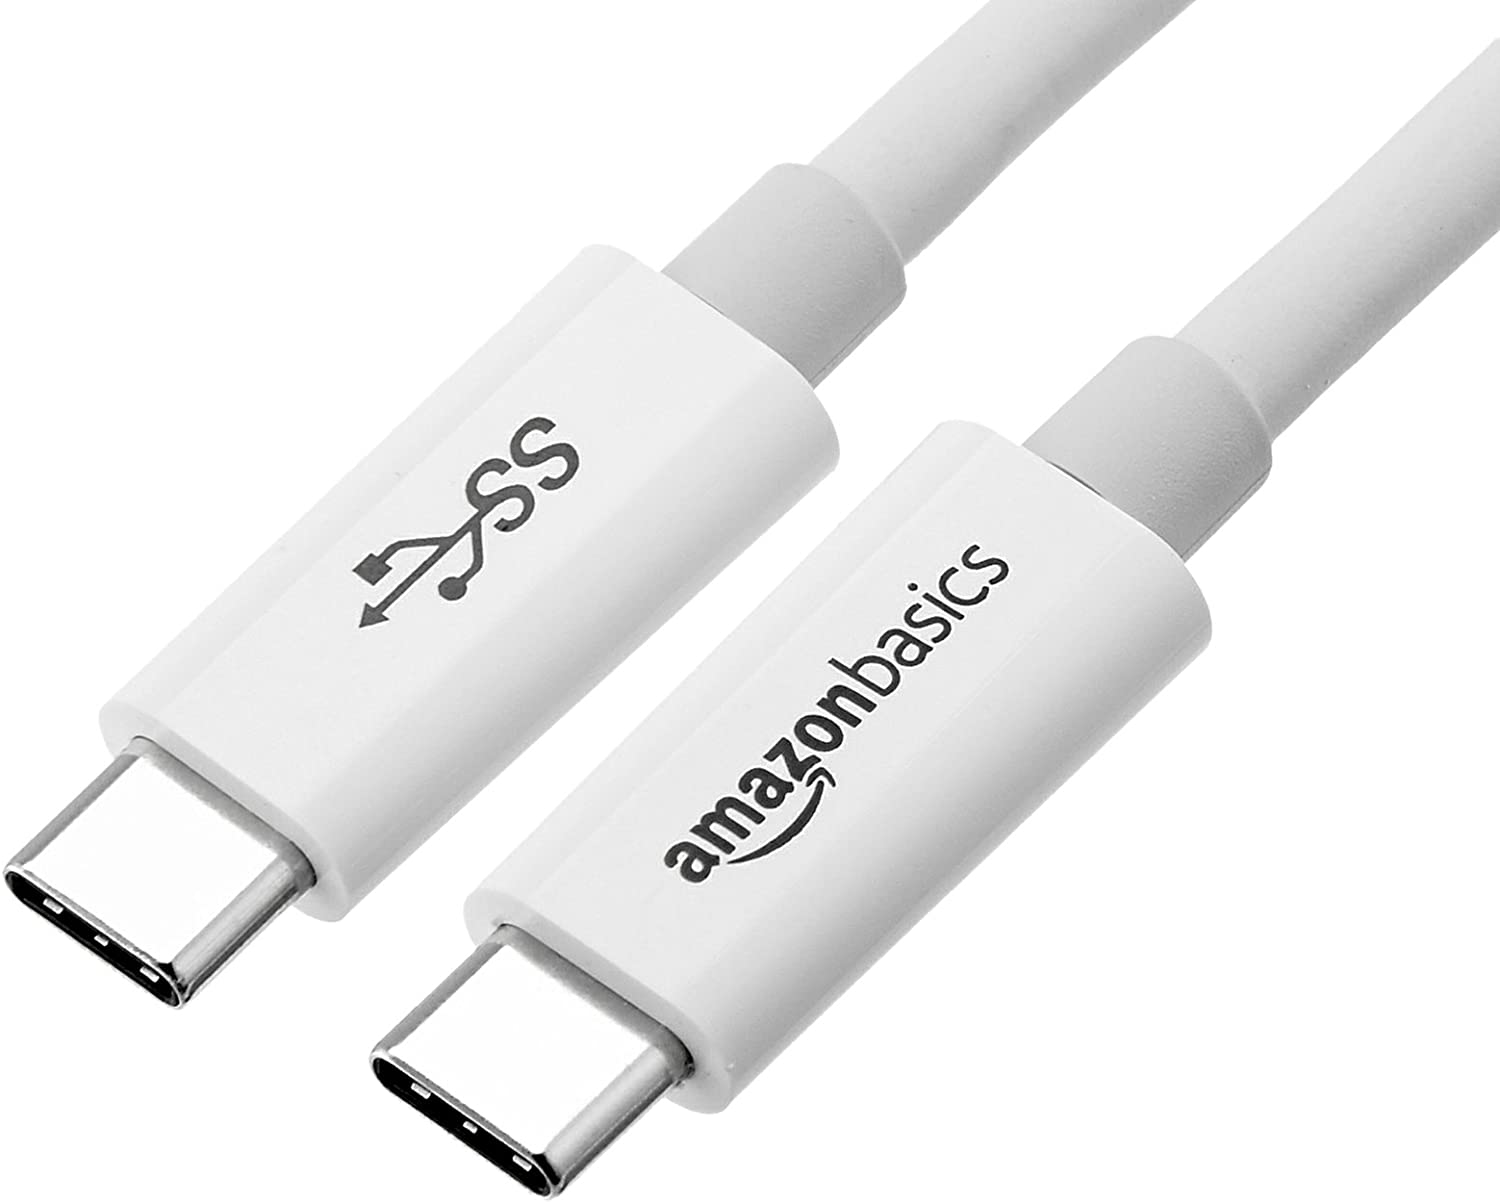 Câble de chargement USB-C USB 6 Amazon Basics de 3.1 m